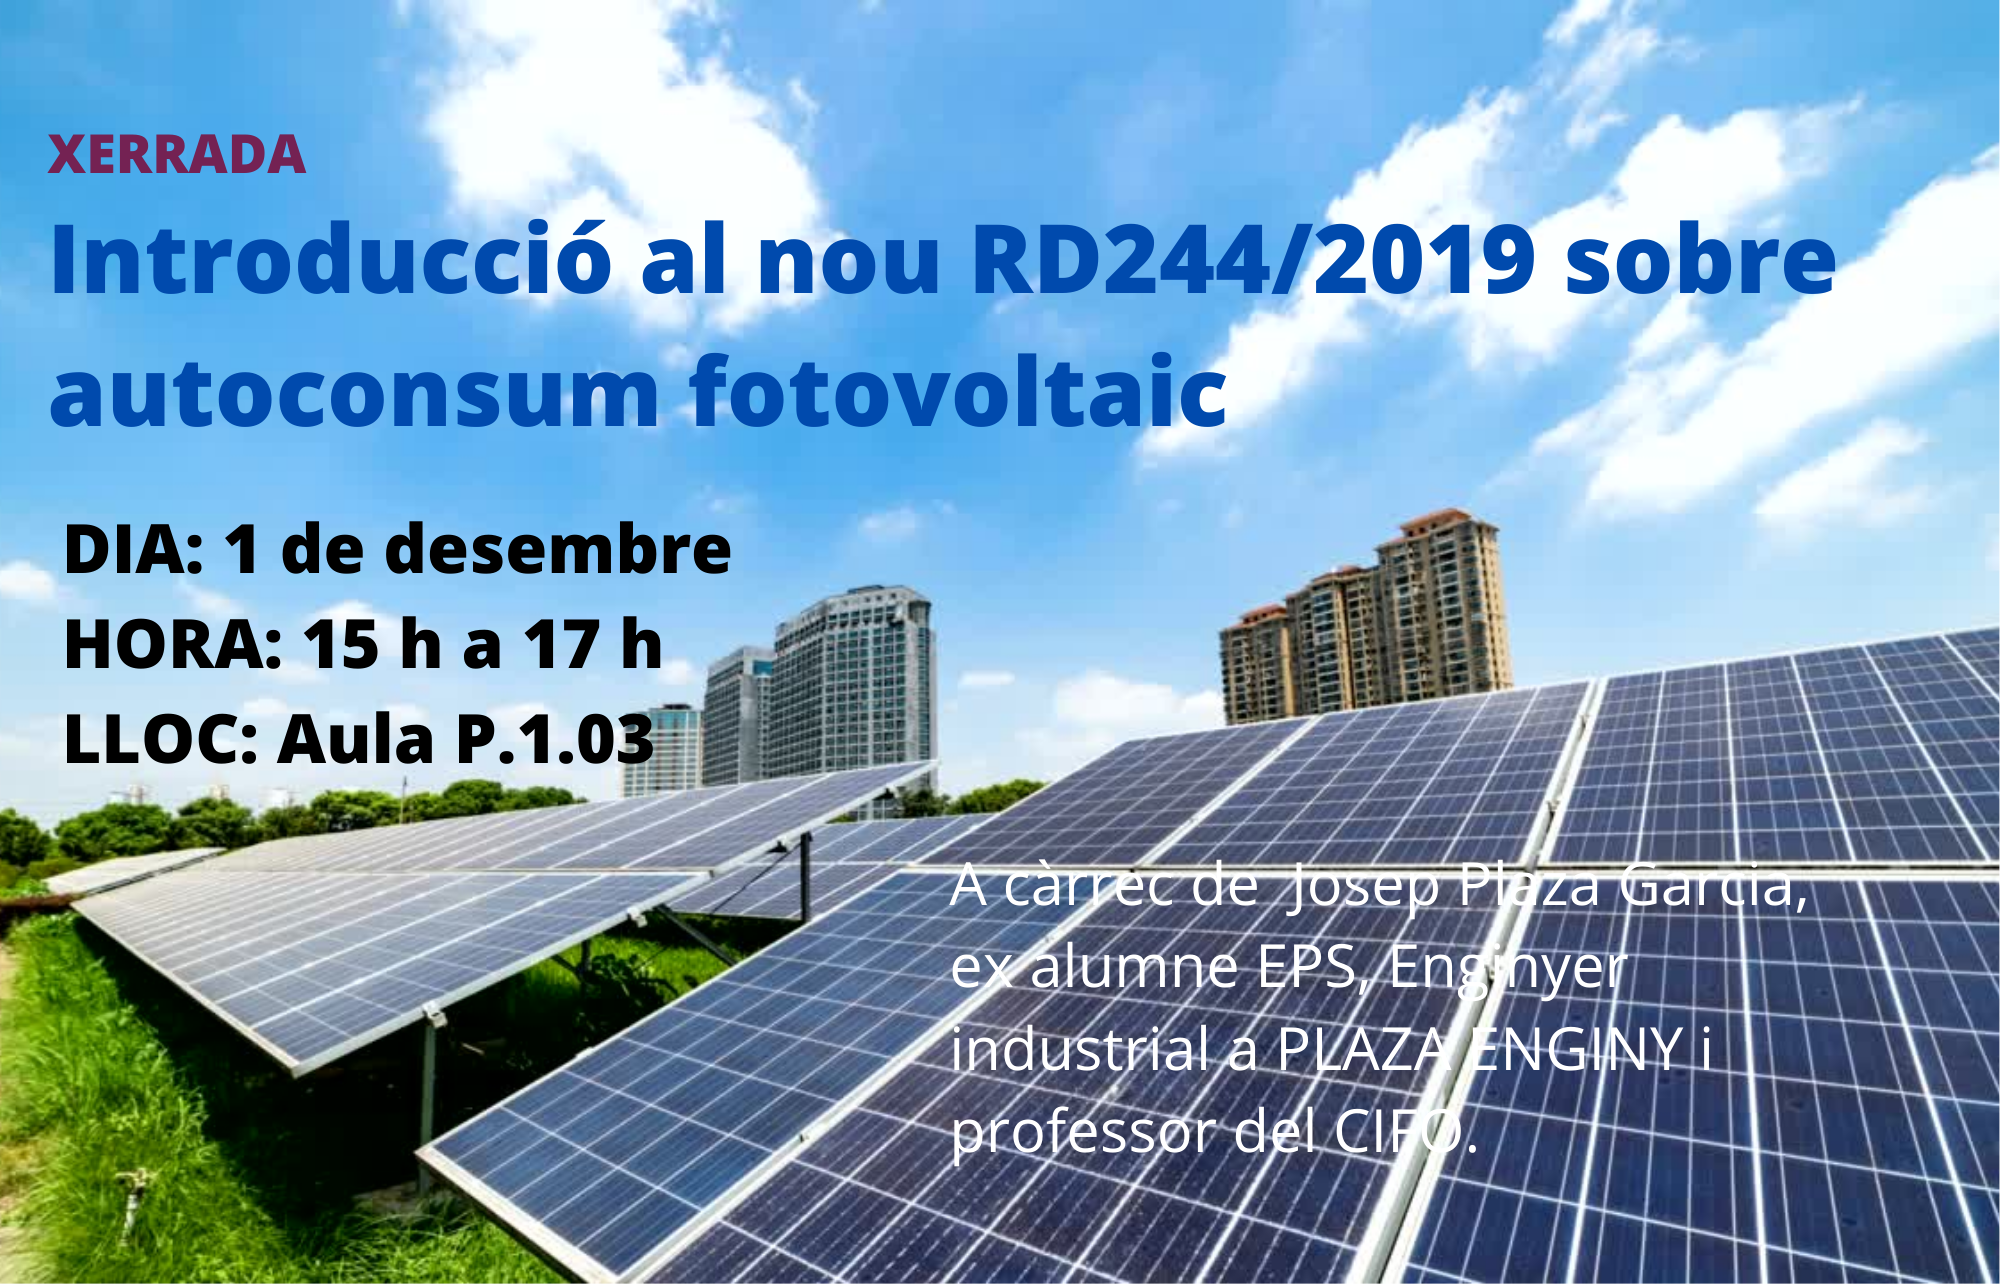 Xerrada-autoconsum-fotovoltaic.PNG_1547463341